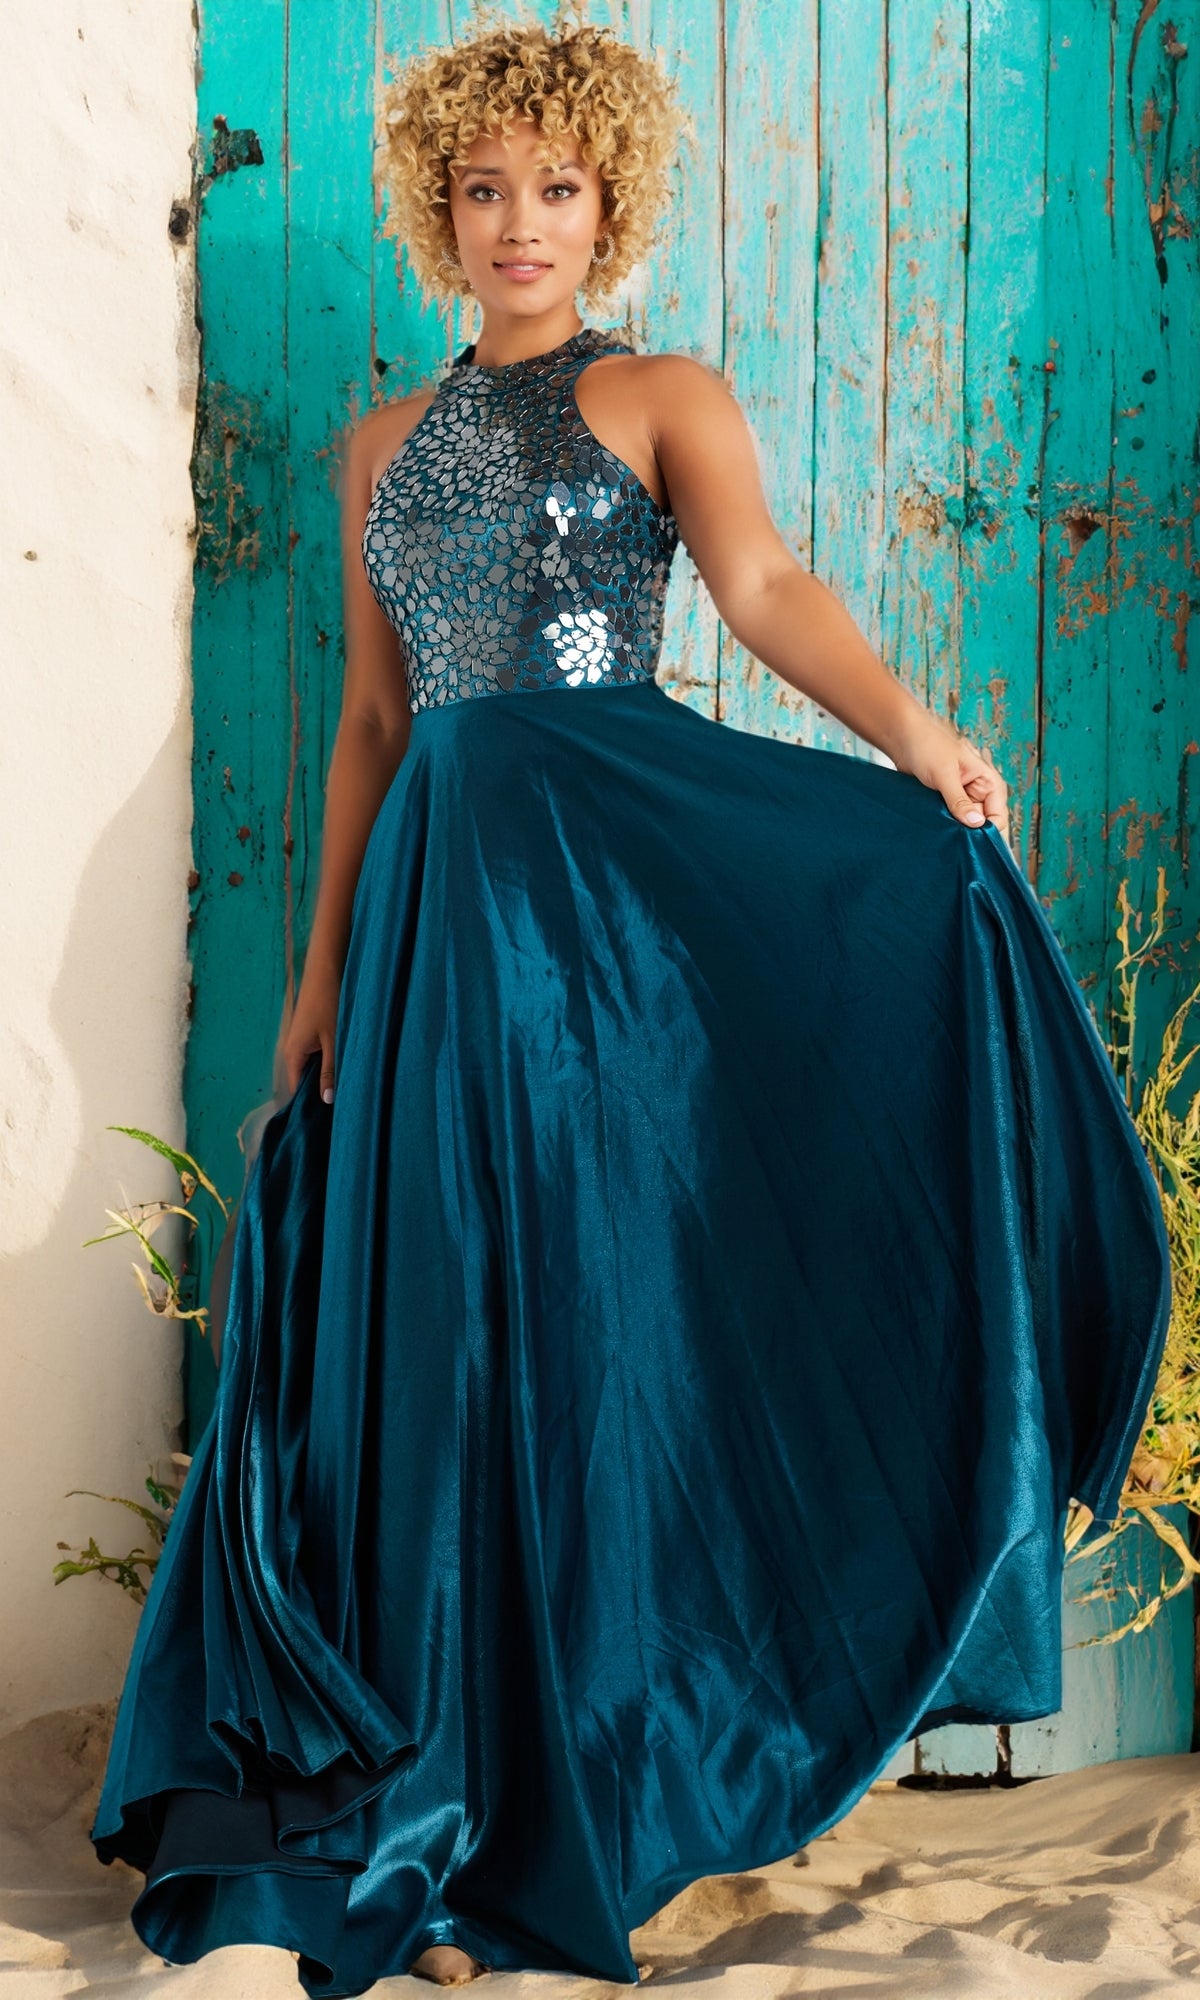 JVN by Jovani High-Neck Prom Dress JVN39295